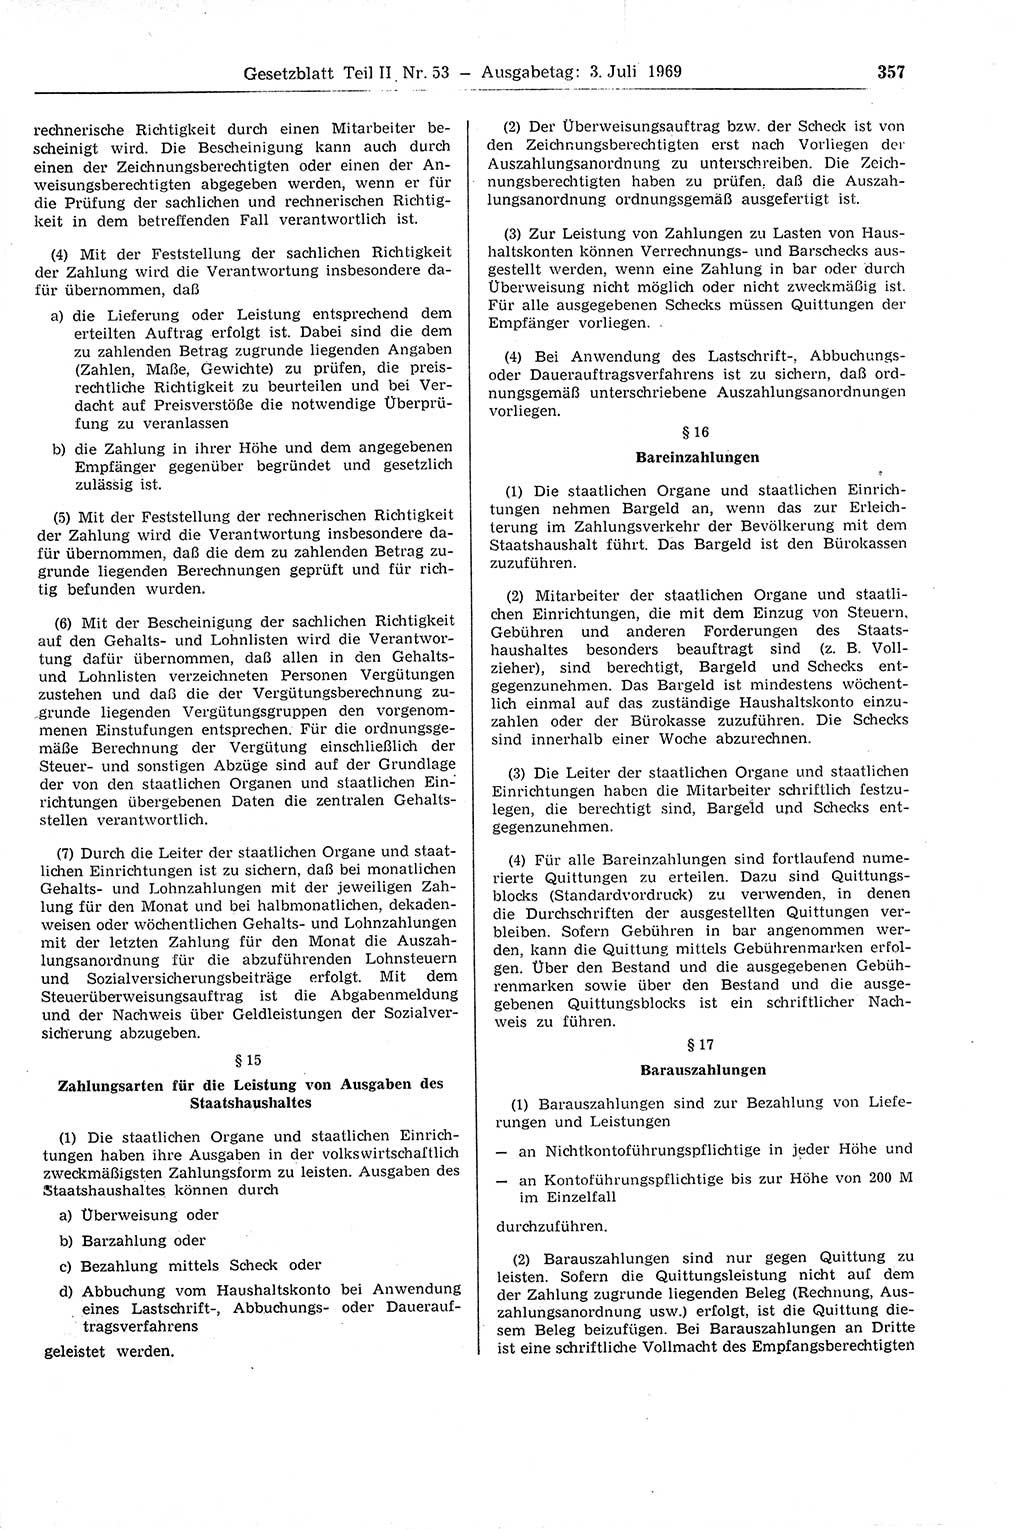 Gesetzblatt (GBl.) der Deutschen Demokratischen Republik (DDR) Teil ⅠⅠ 1969, Seite 357 (GBl. DDR ⅠⅠ 1969, S. 357)